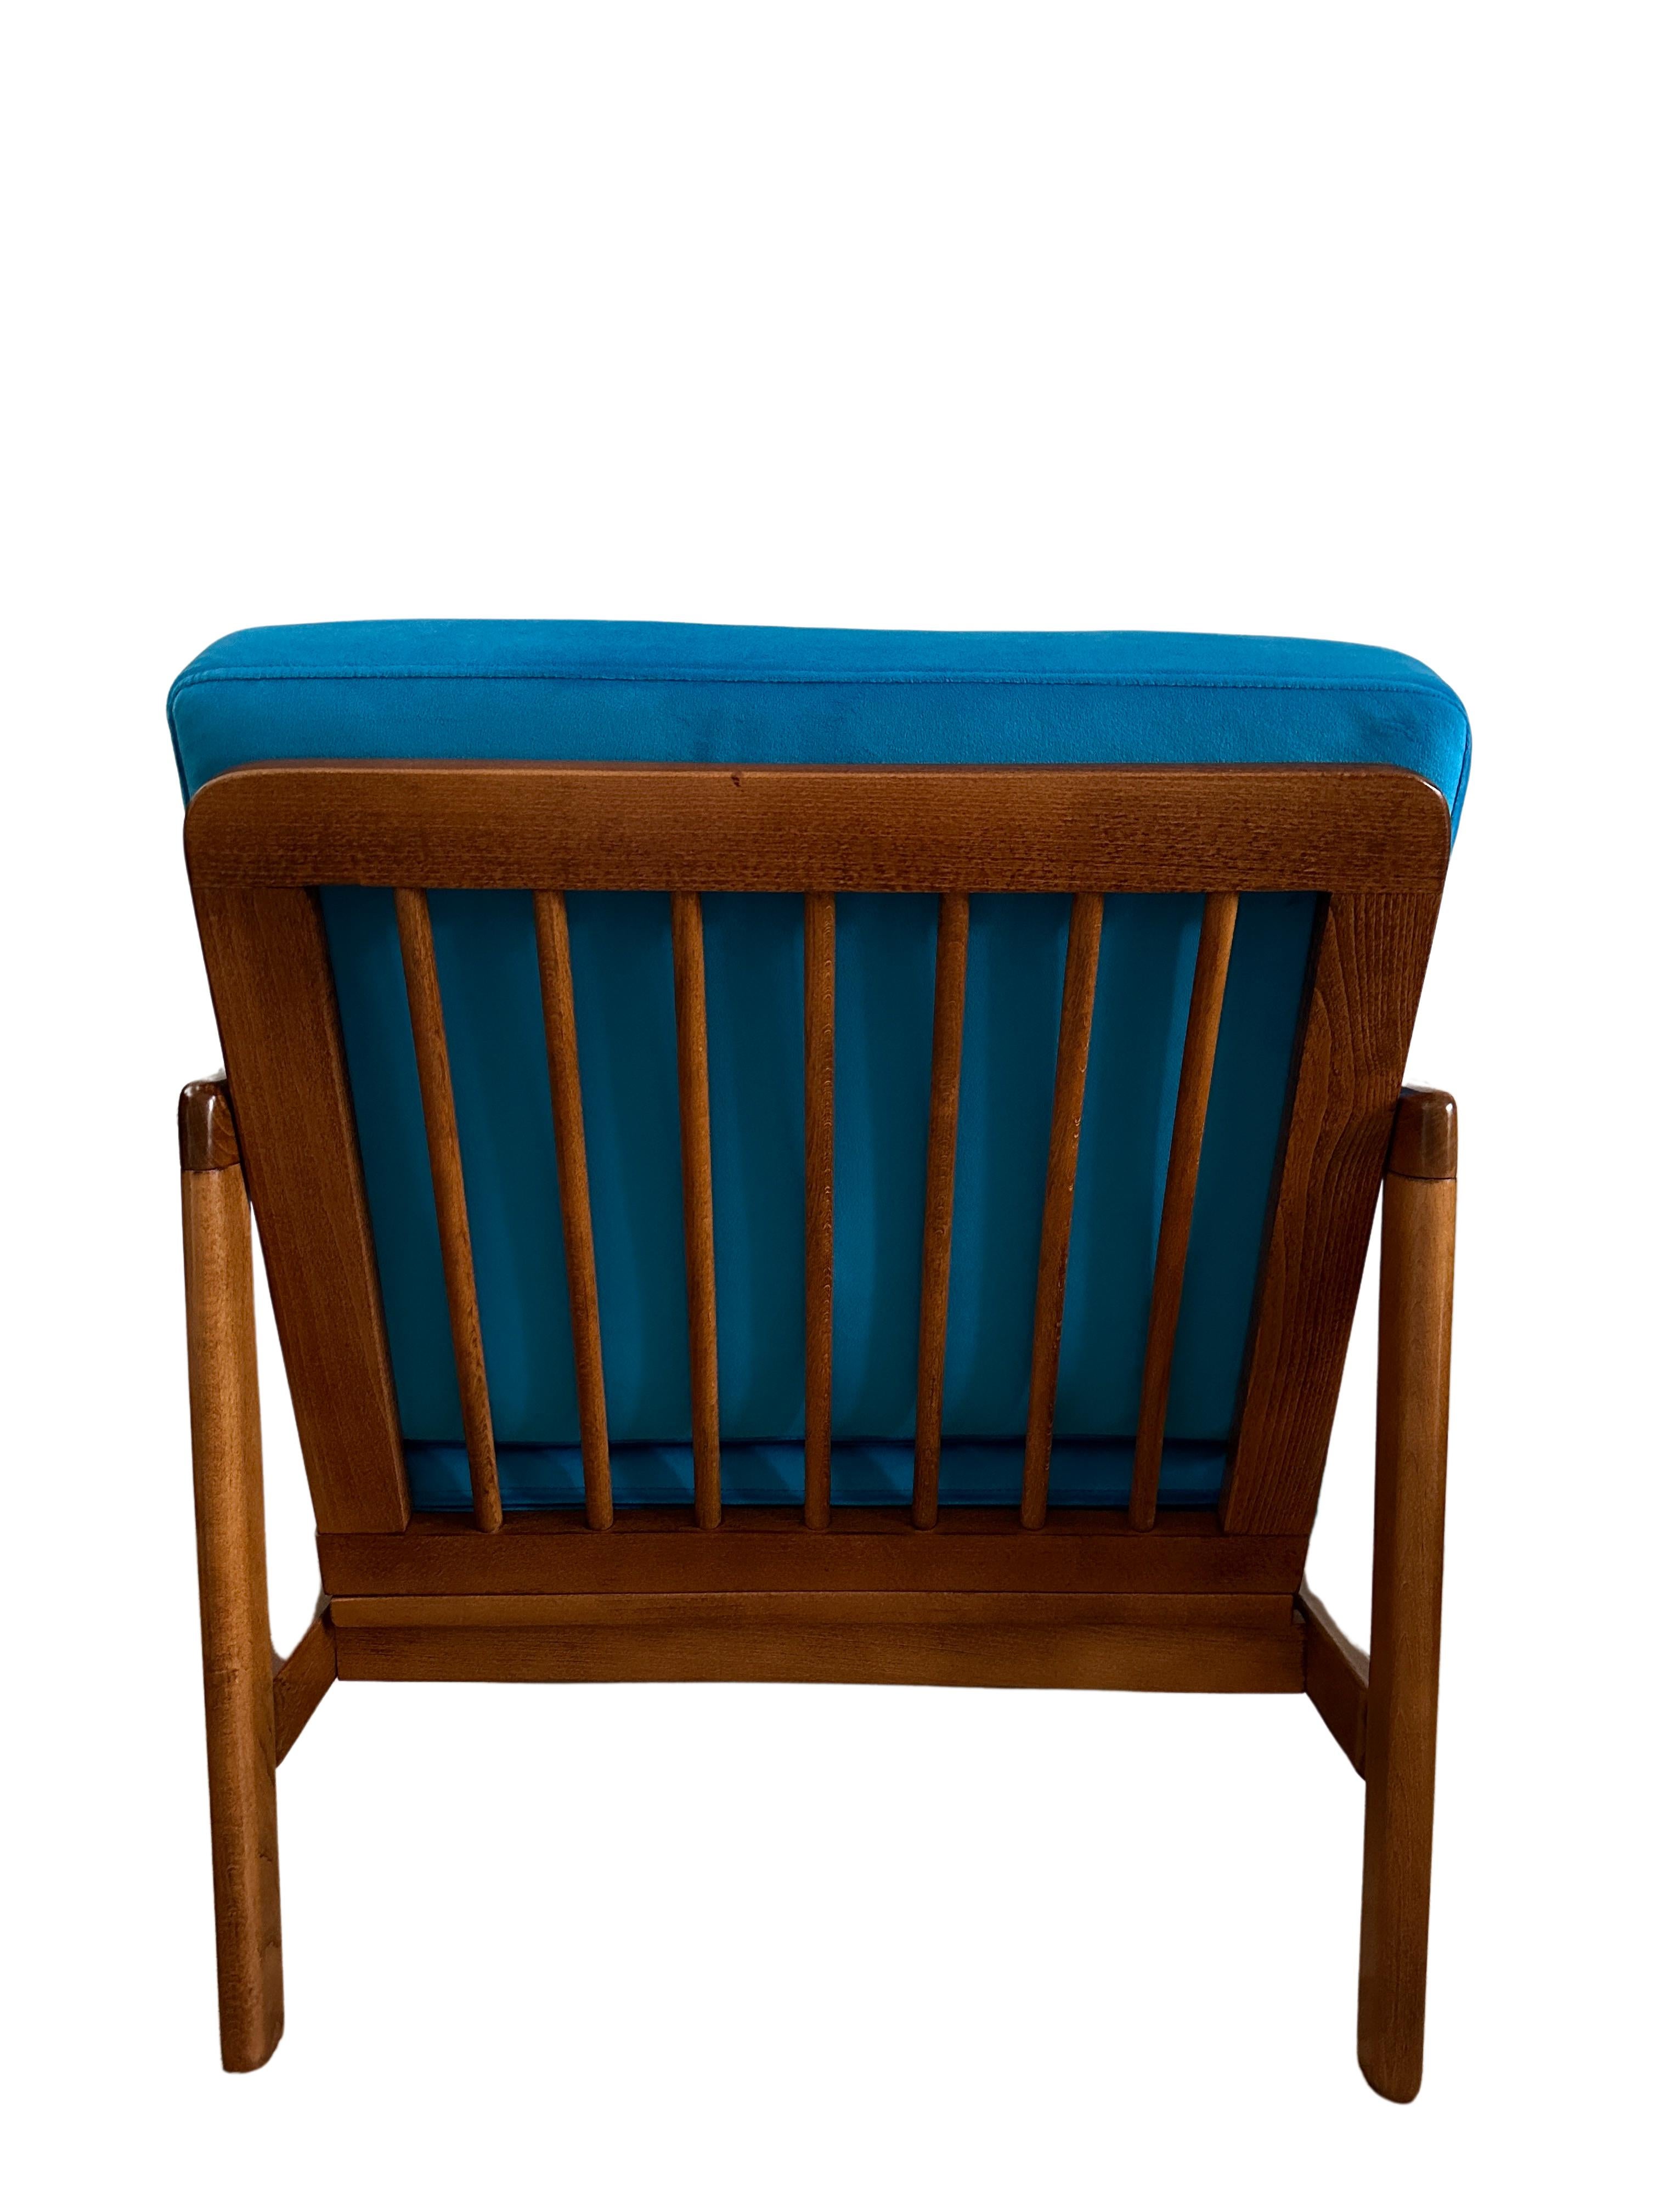 L'ensemble de deux chaises longues très confortables, modèle B-7752, conçu par Zenon Baczyk, a été fabriqué par Swarzedzkie Fabryki Mebli en Pologne dans les années 1960. 

La structure est en bois de hêtre de couleur brun miel profond, finie avec